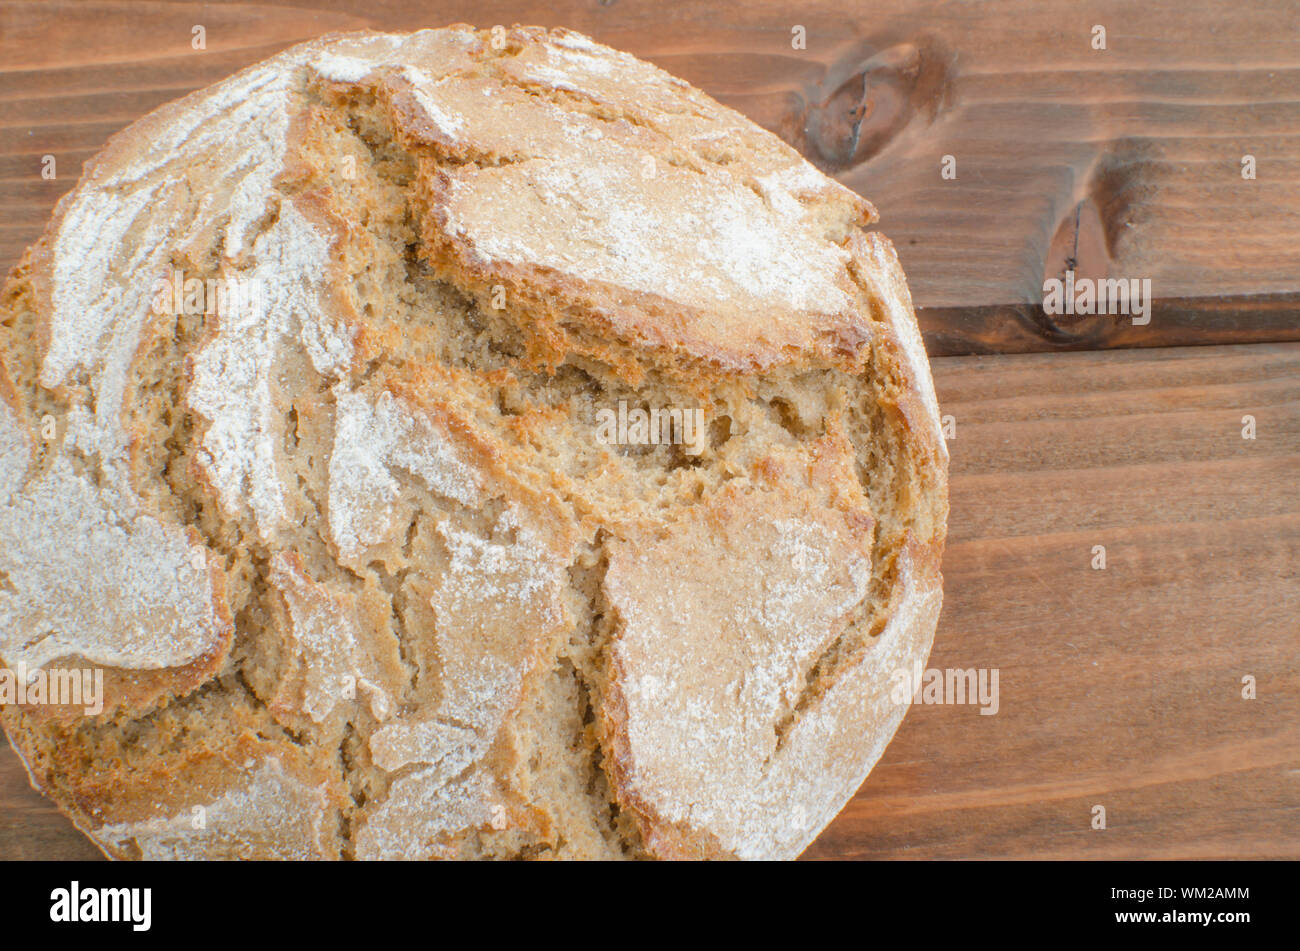 Бездрожжевой хлеб в духовке без закваски. Бездрожжевой хлеб. Домашний хлеб. Слоеный хлеб в духовке дрожжевой. Домашний бездрожжевой хлеб.